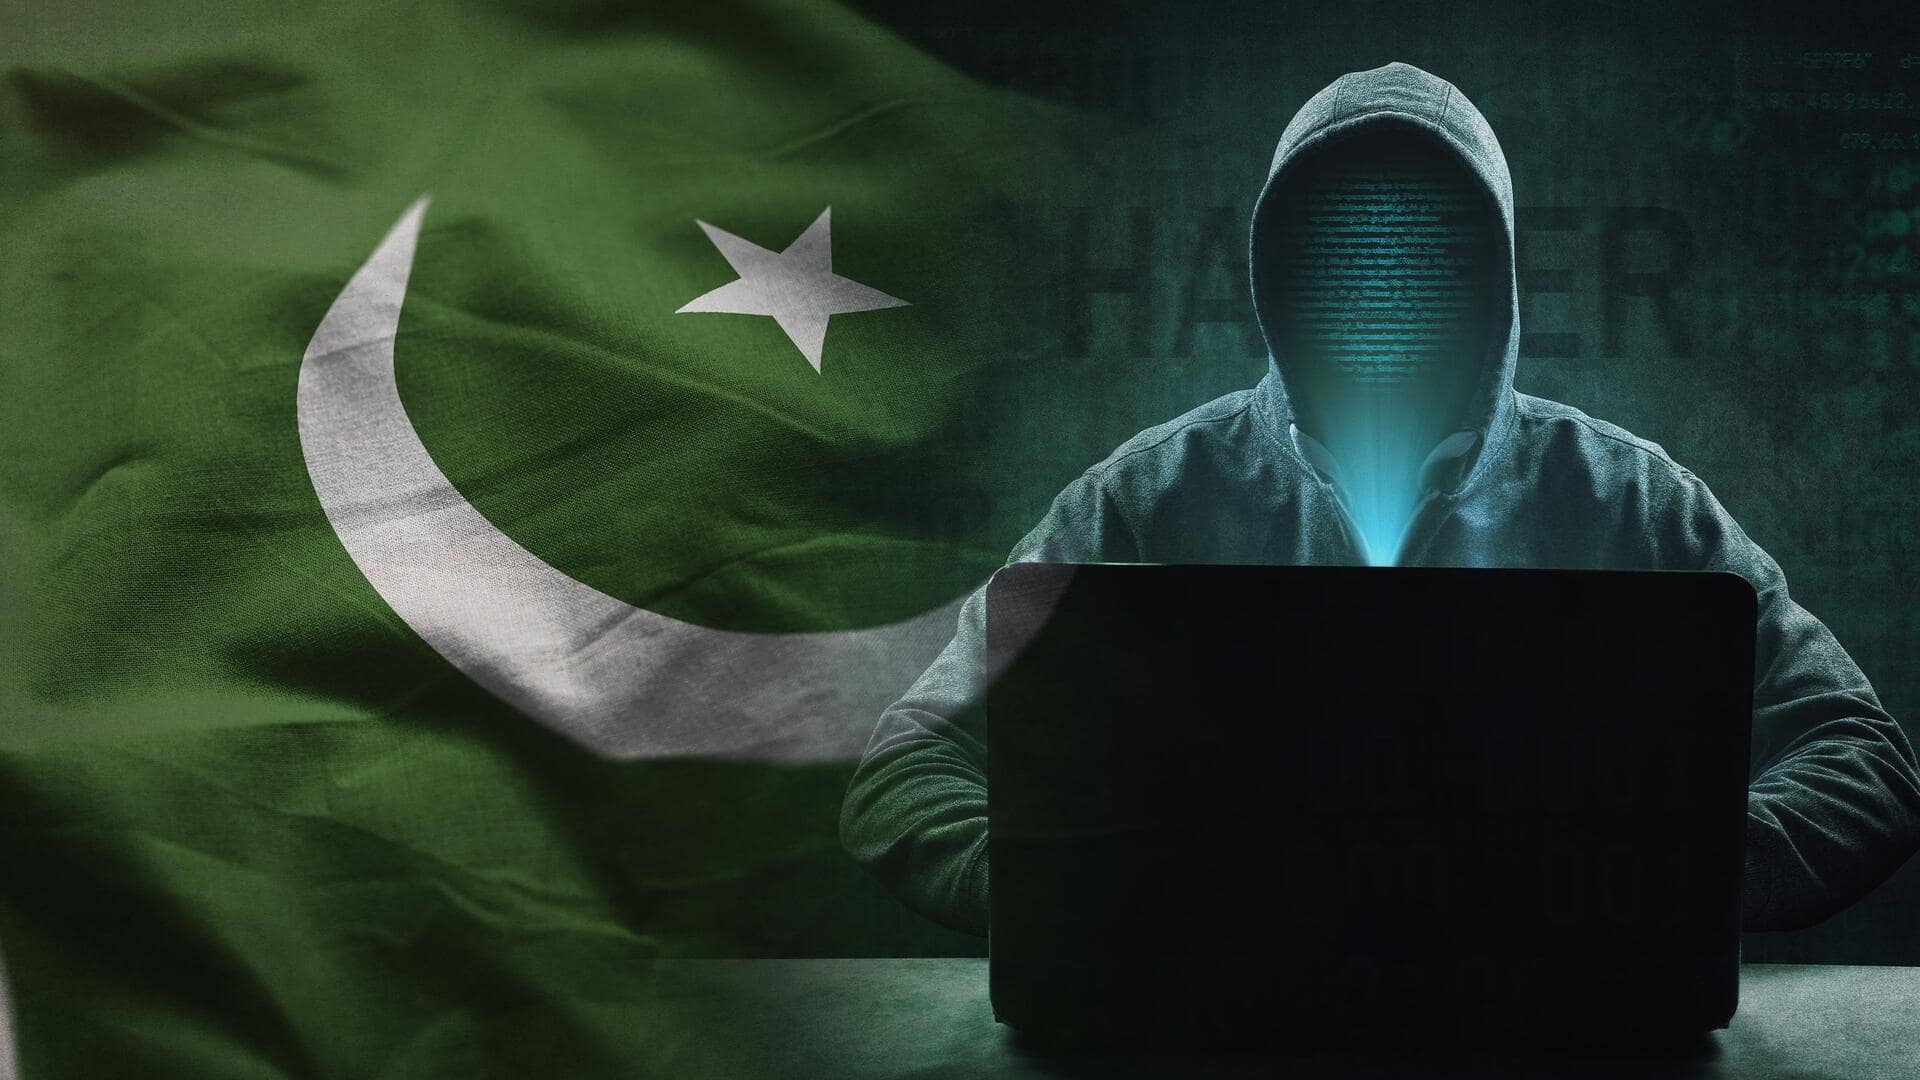 पाकिस्तानी साइबर हमलावर नई रणनीति से भारतीय सुरक्षाकर्मियों को बना रहे निशाना, एडवायजरी जारी